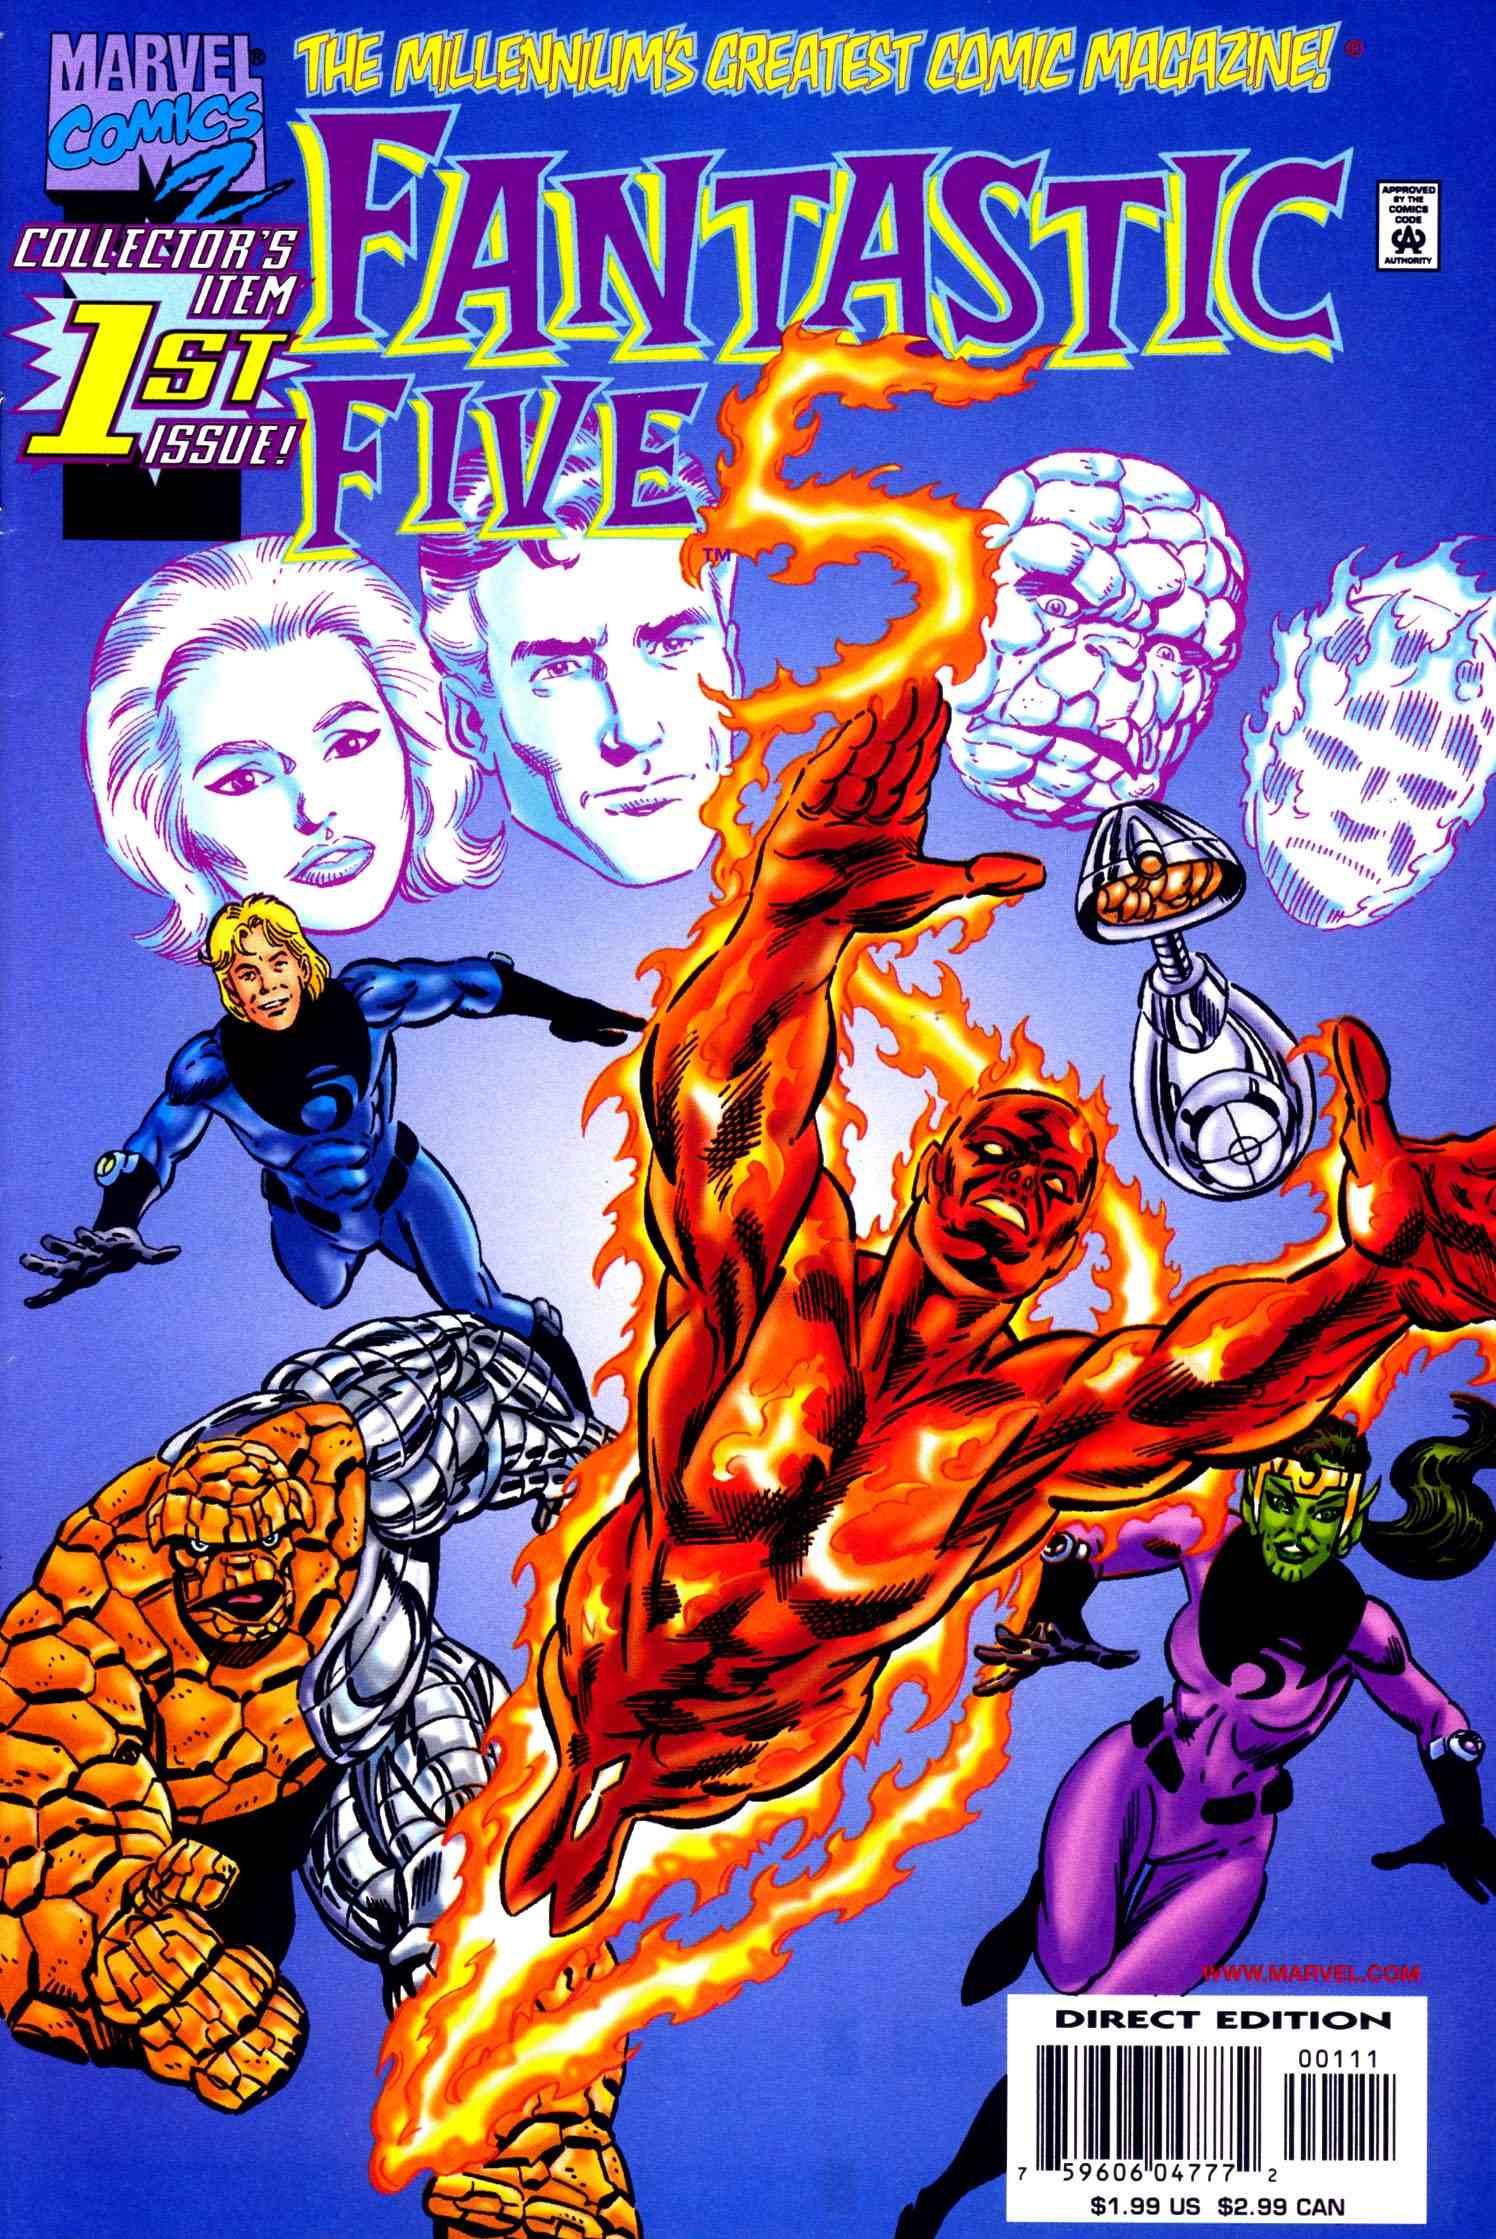 Fantastic Five Vol. 1 #1